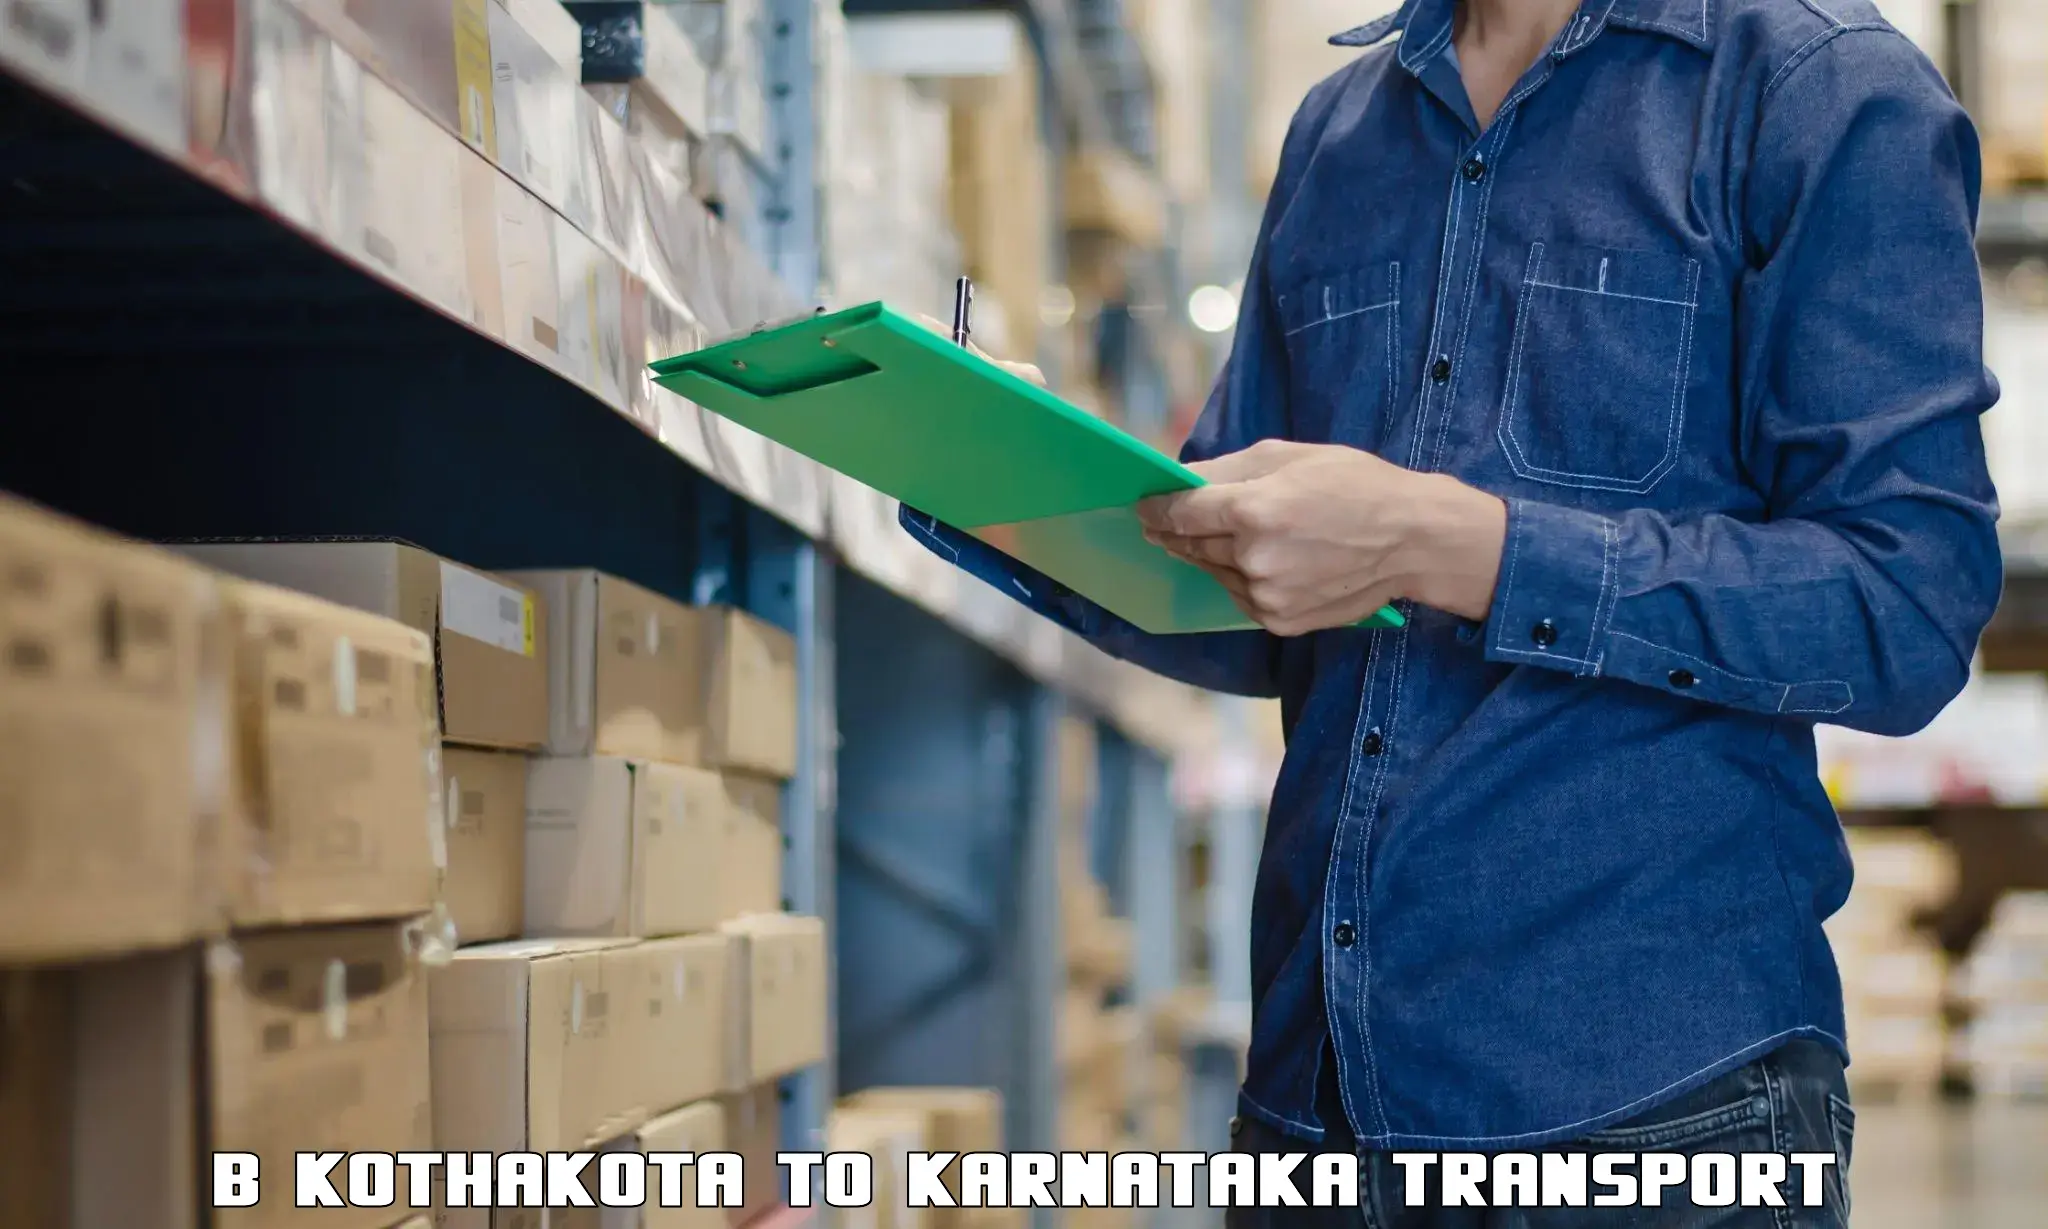 Shipping services B Kothakota to Kanjarakatte